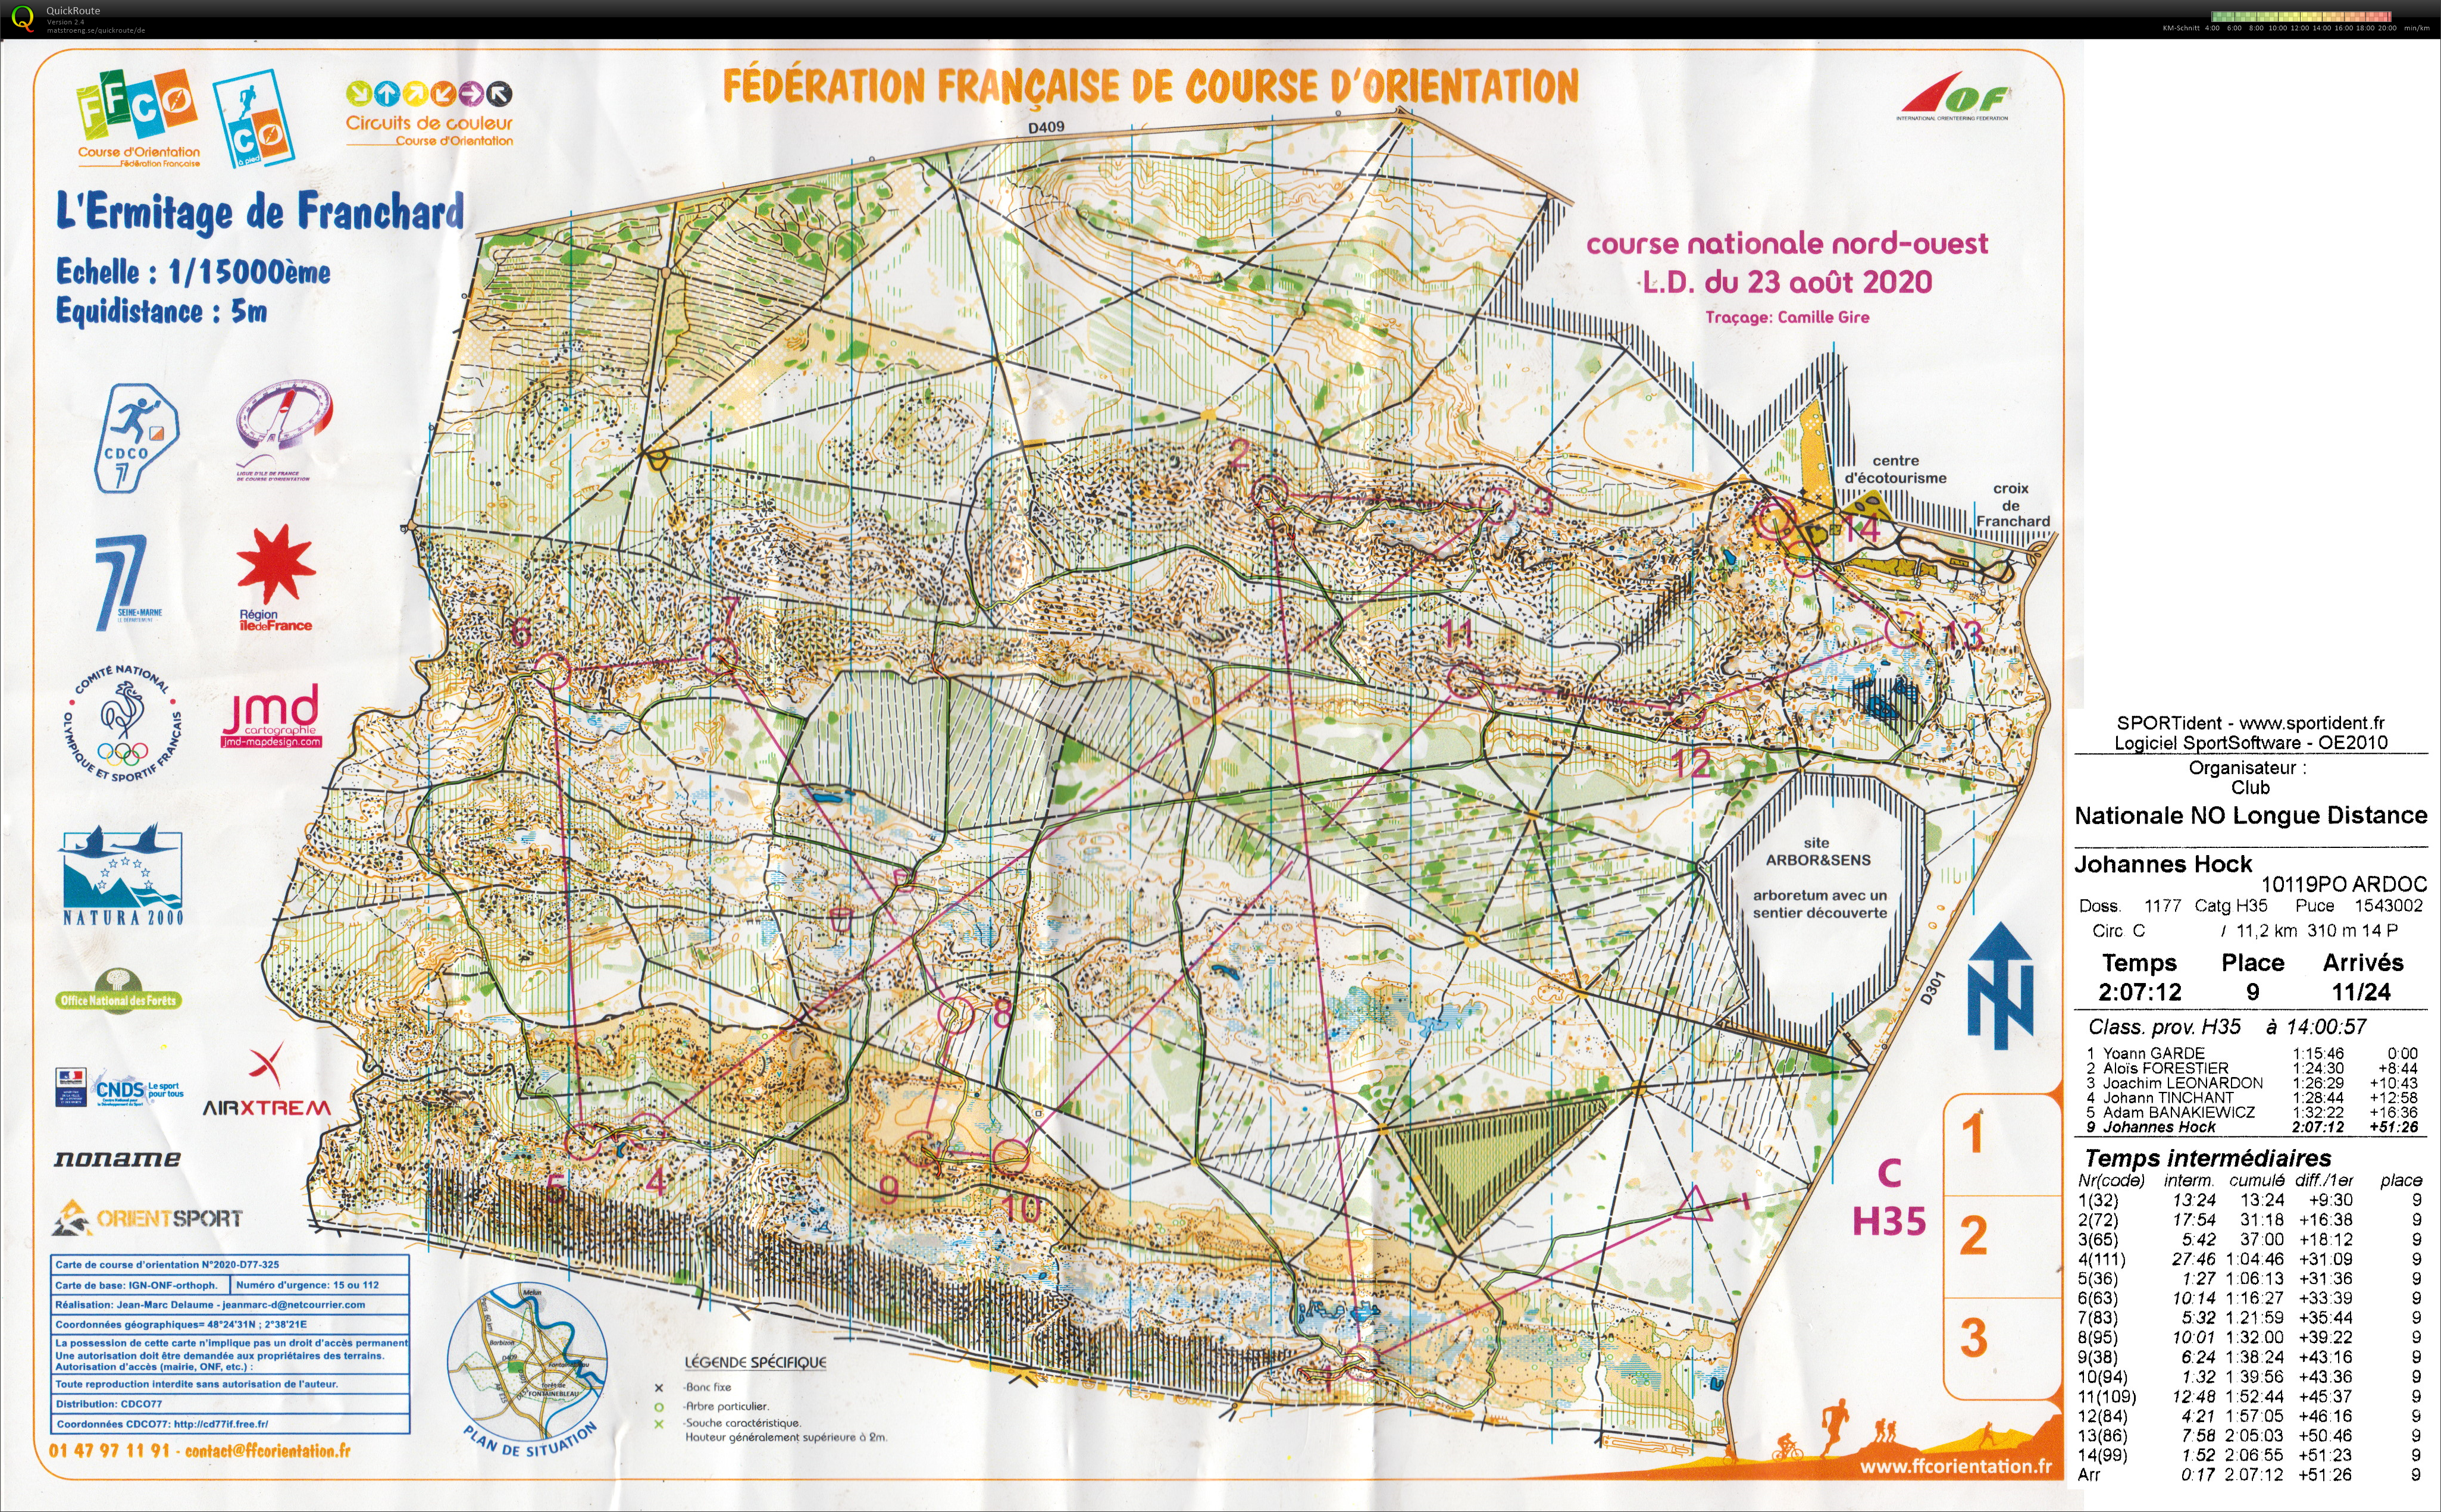 Course nationale L.D. Fontainebleau (23/08/2020)